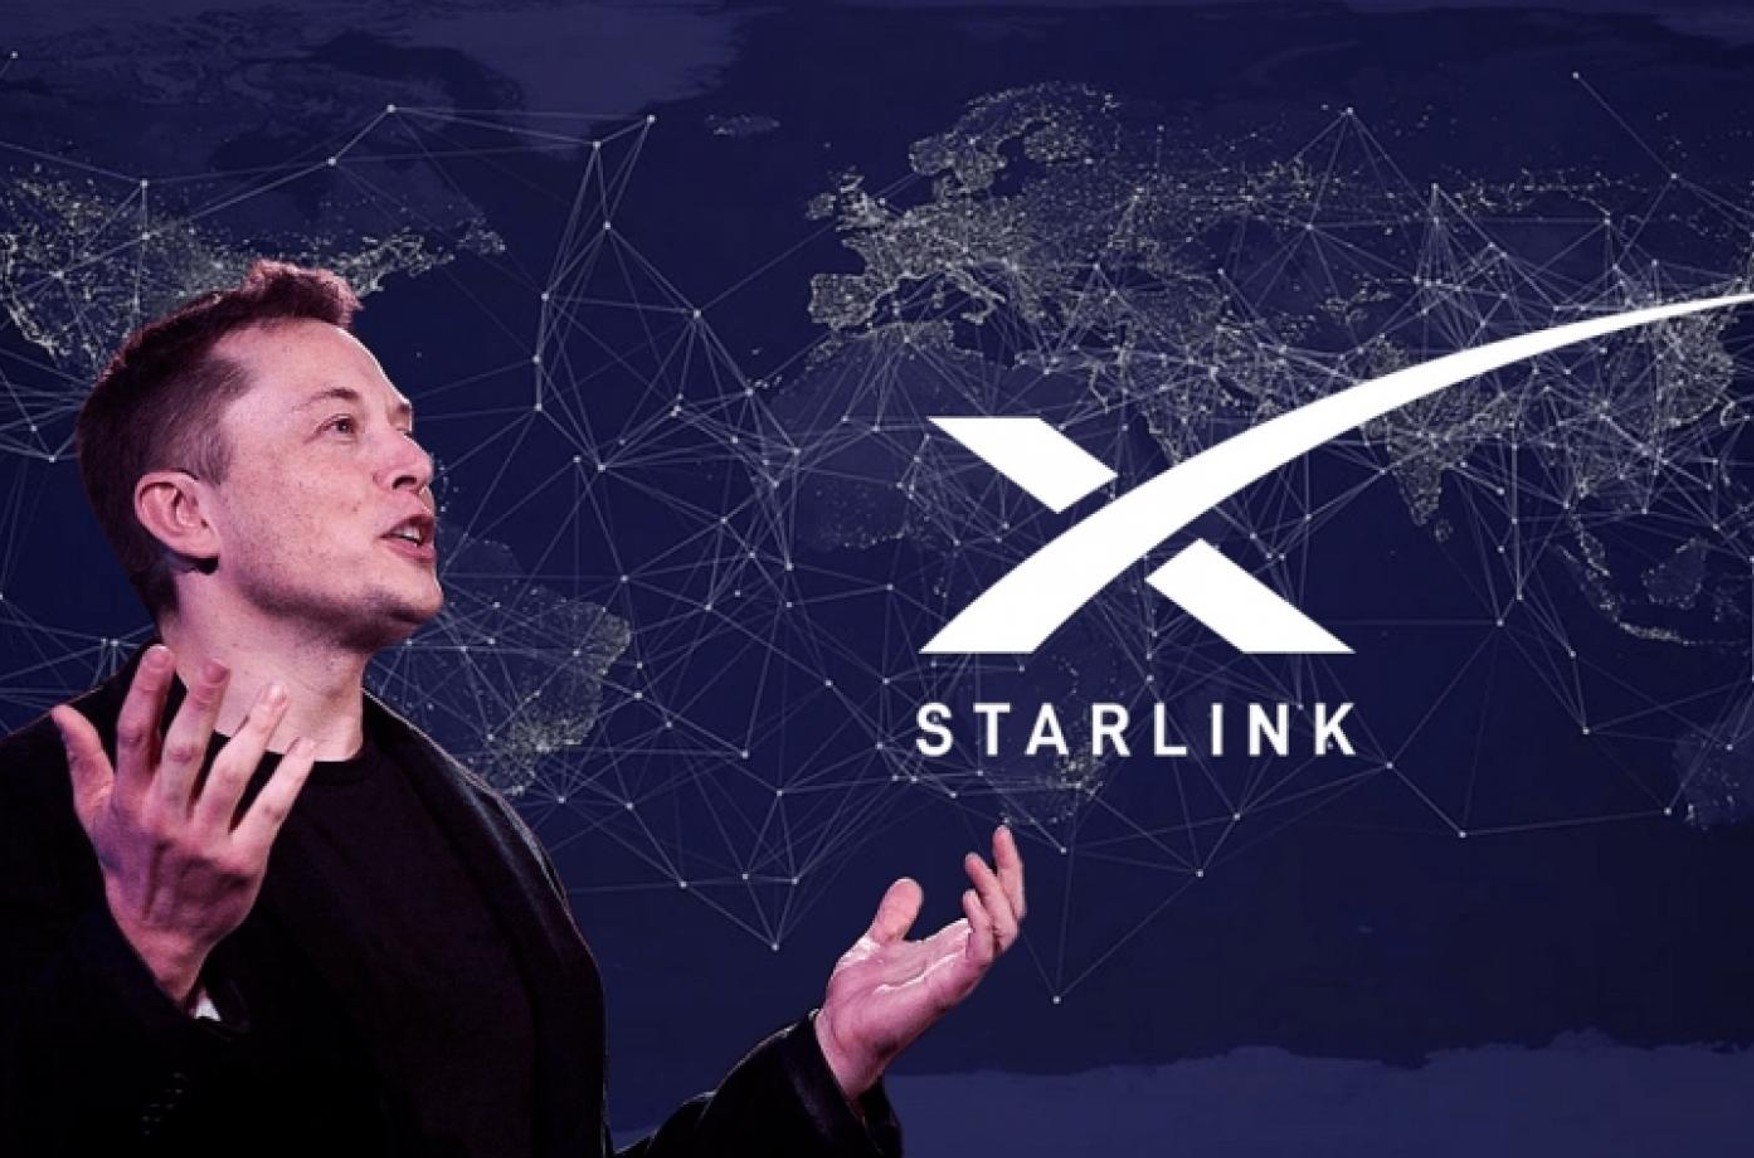 SpaceX Маска заявила, что больше не может платить за Starlink в Украине, и попросила Пентагон оплатить счет